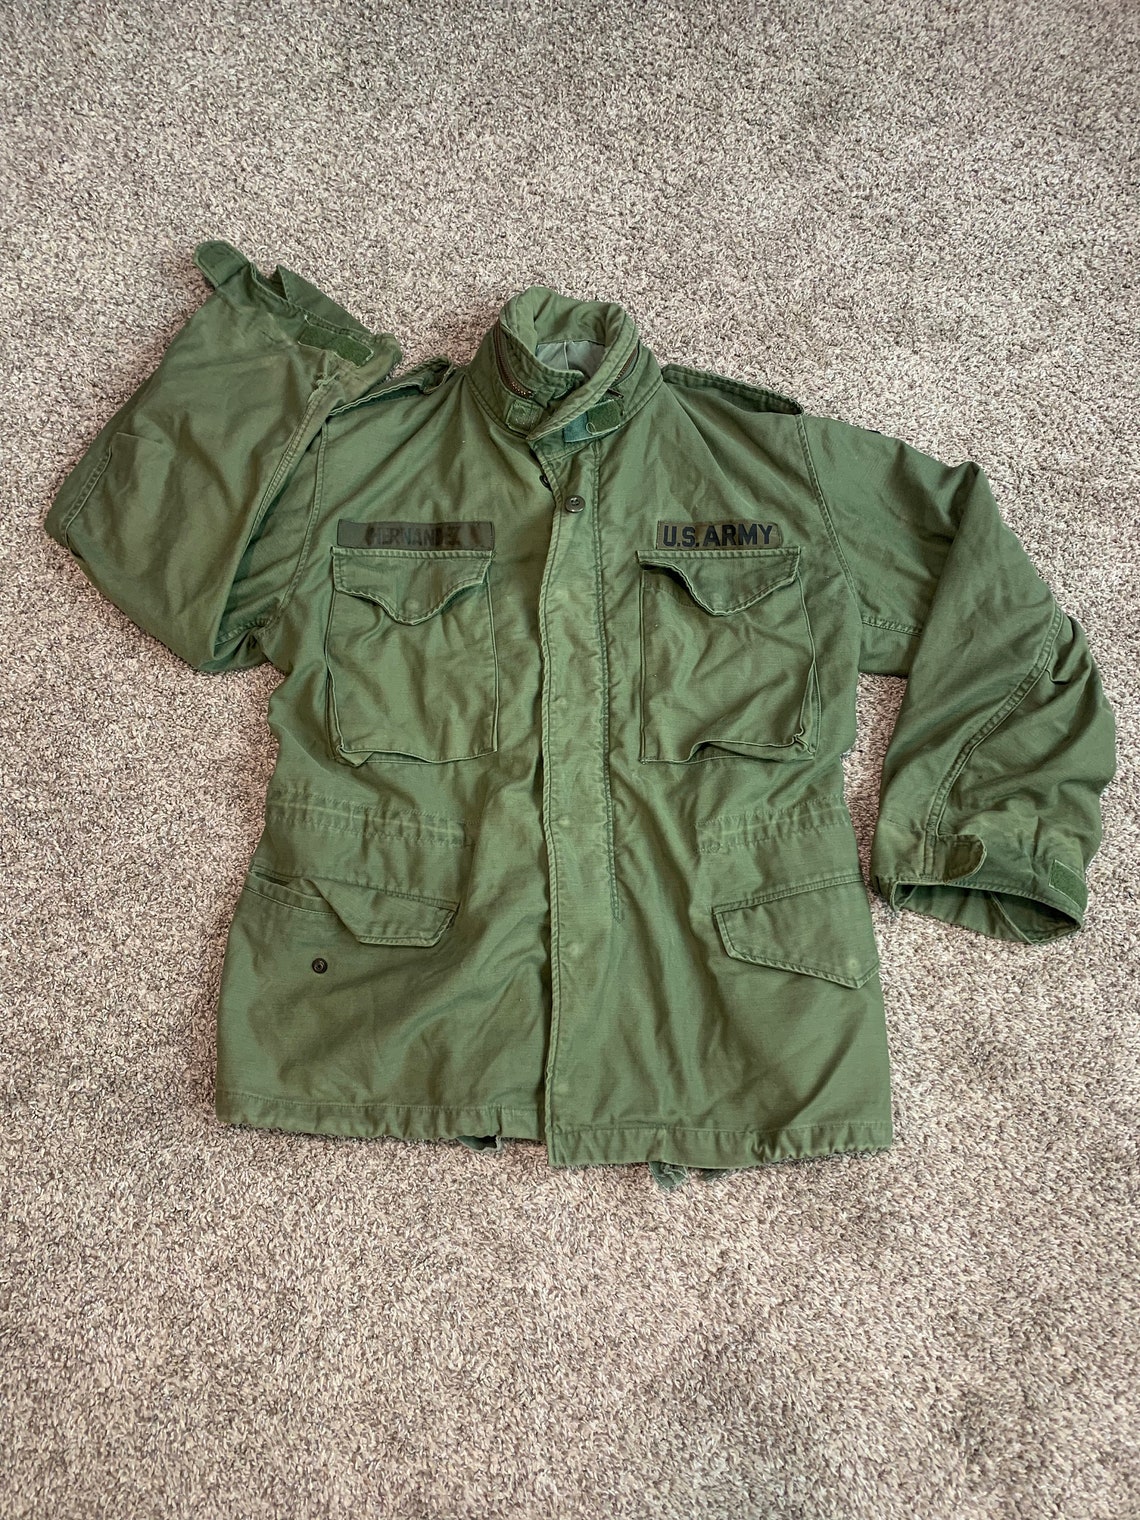 Vintage M65 Field Jacket size S Small Vtg 60s 1960s OG Olive | Etsy